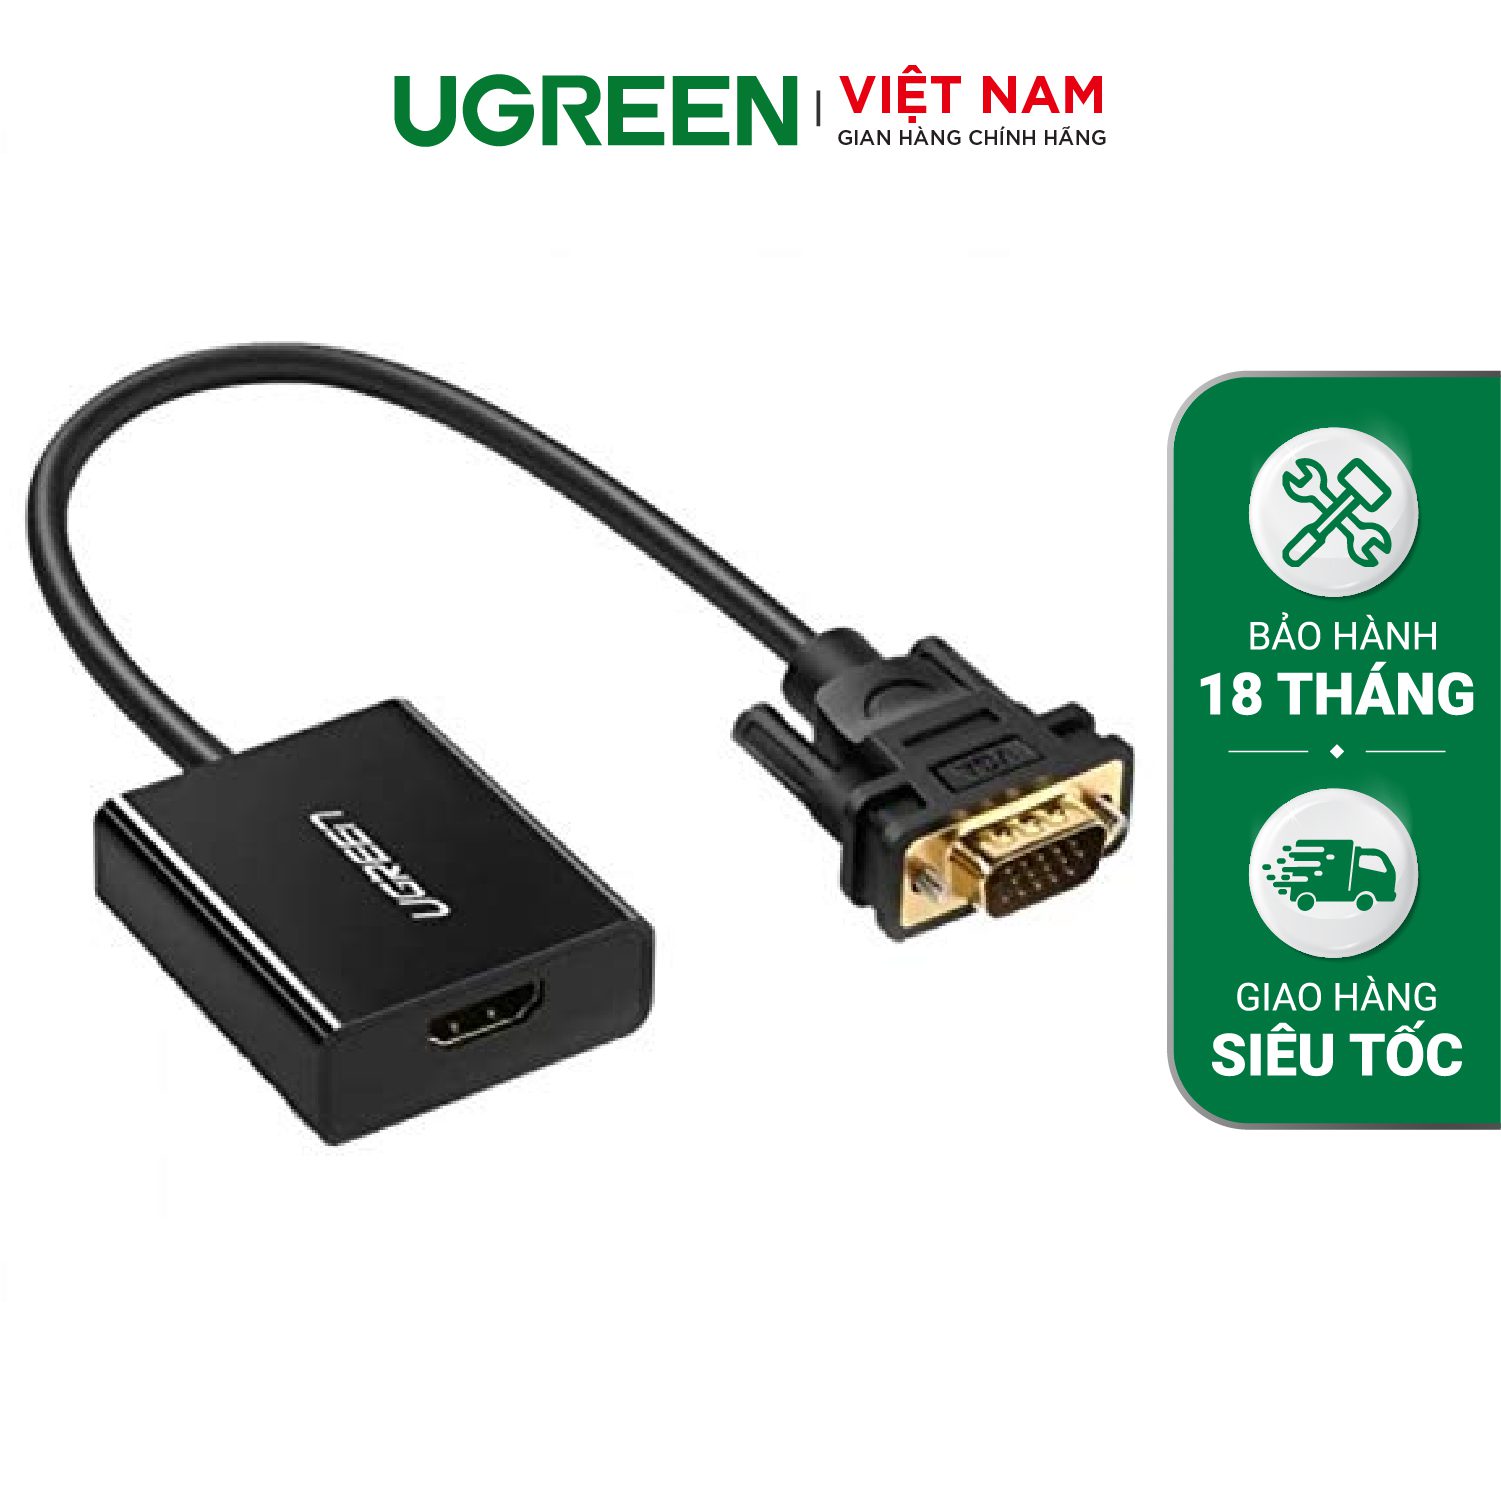 Bộ chuyển đổi VGA sang HDMI + Audio 3.5mm UGREEN 60814 Hỗ trợ phân giải Full HD 1080p@60HZ - Cổng nguồn Micro USB 5V - Bảo hành 18 tháng – Ugreen Việt Nam